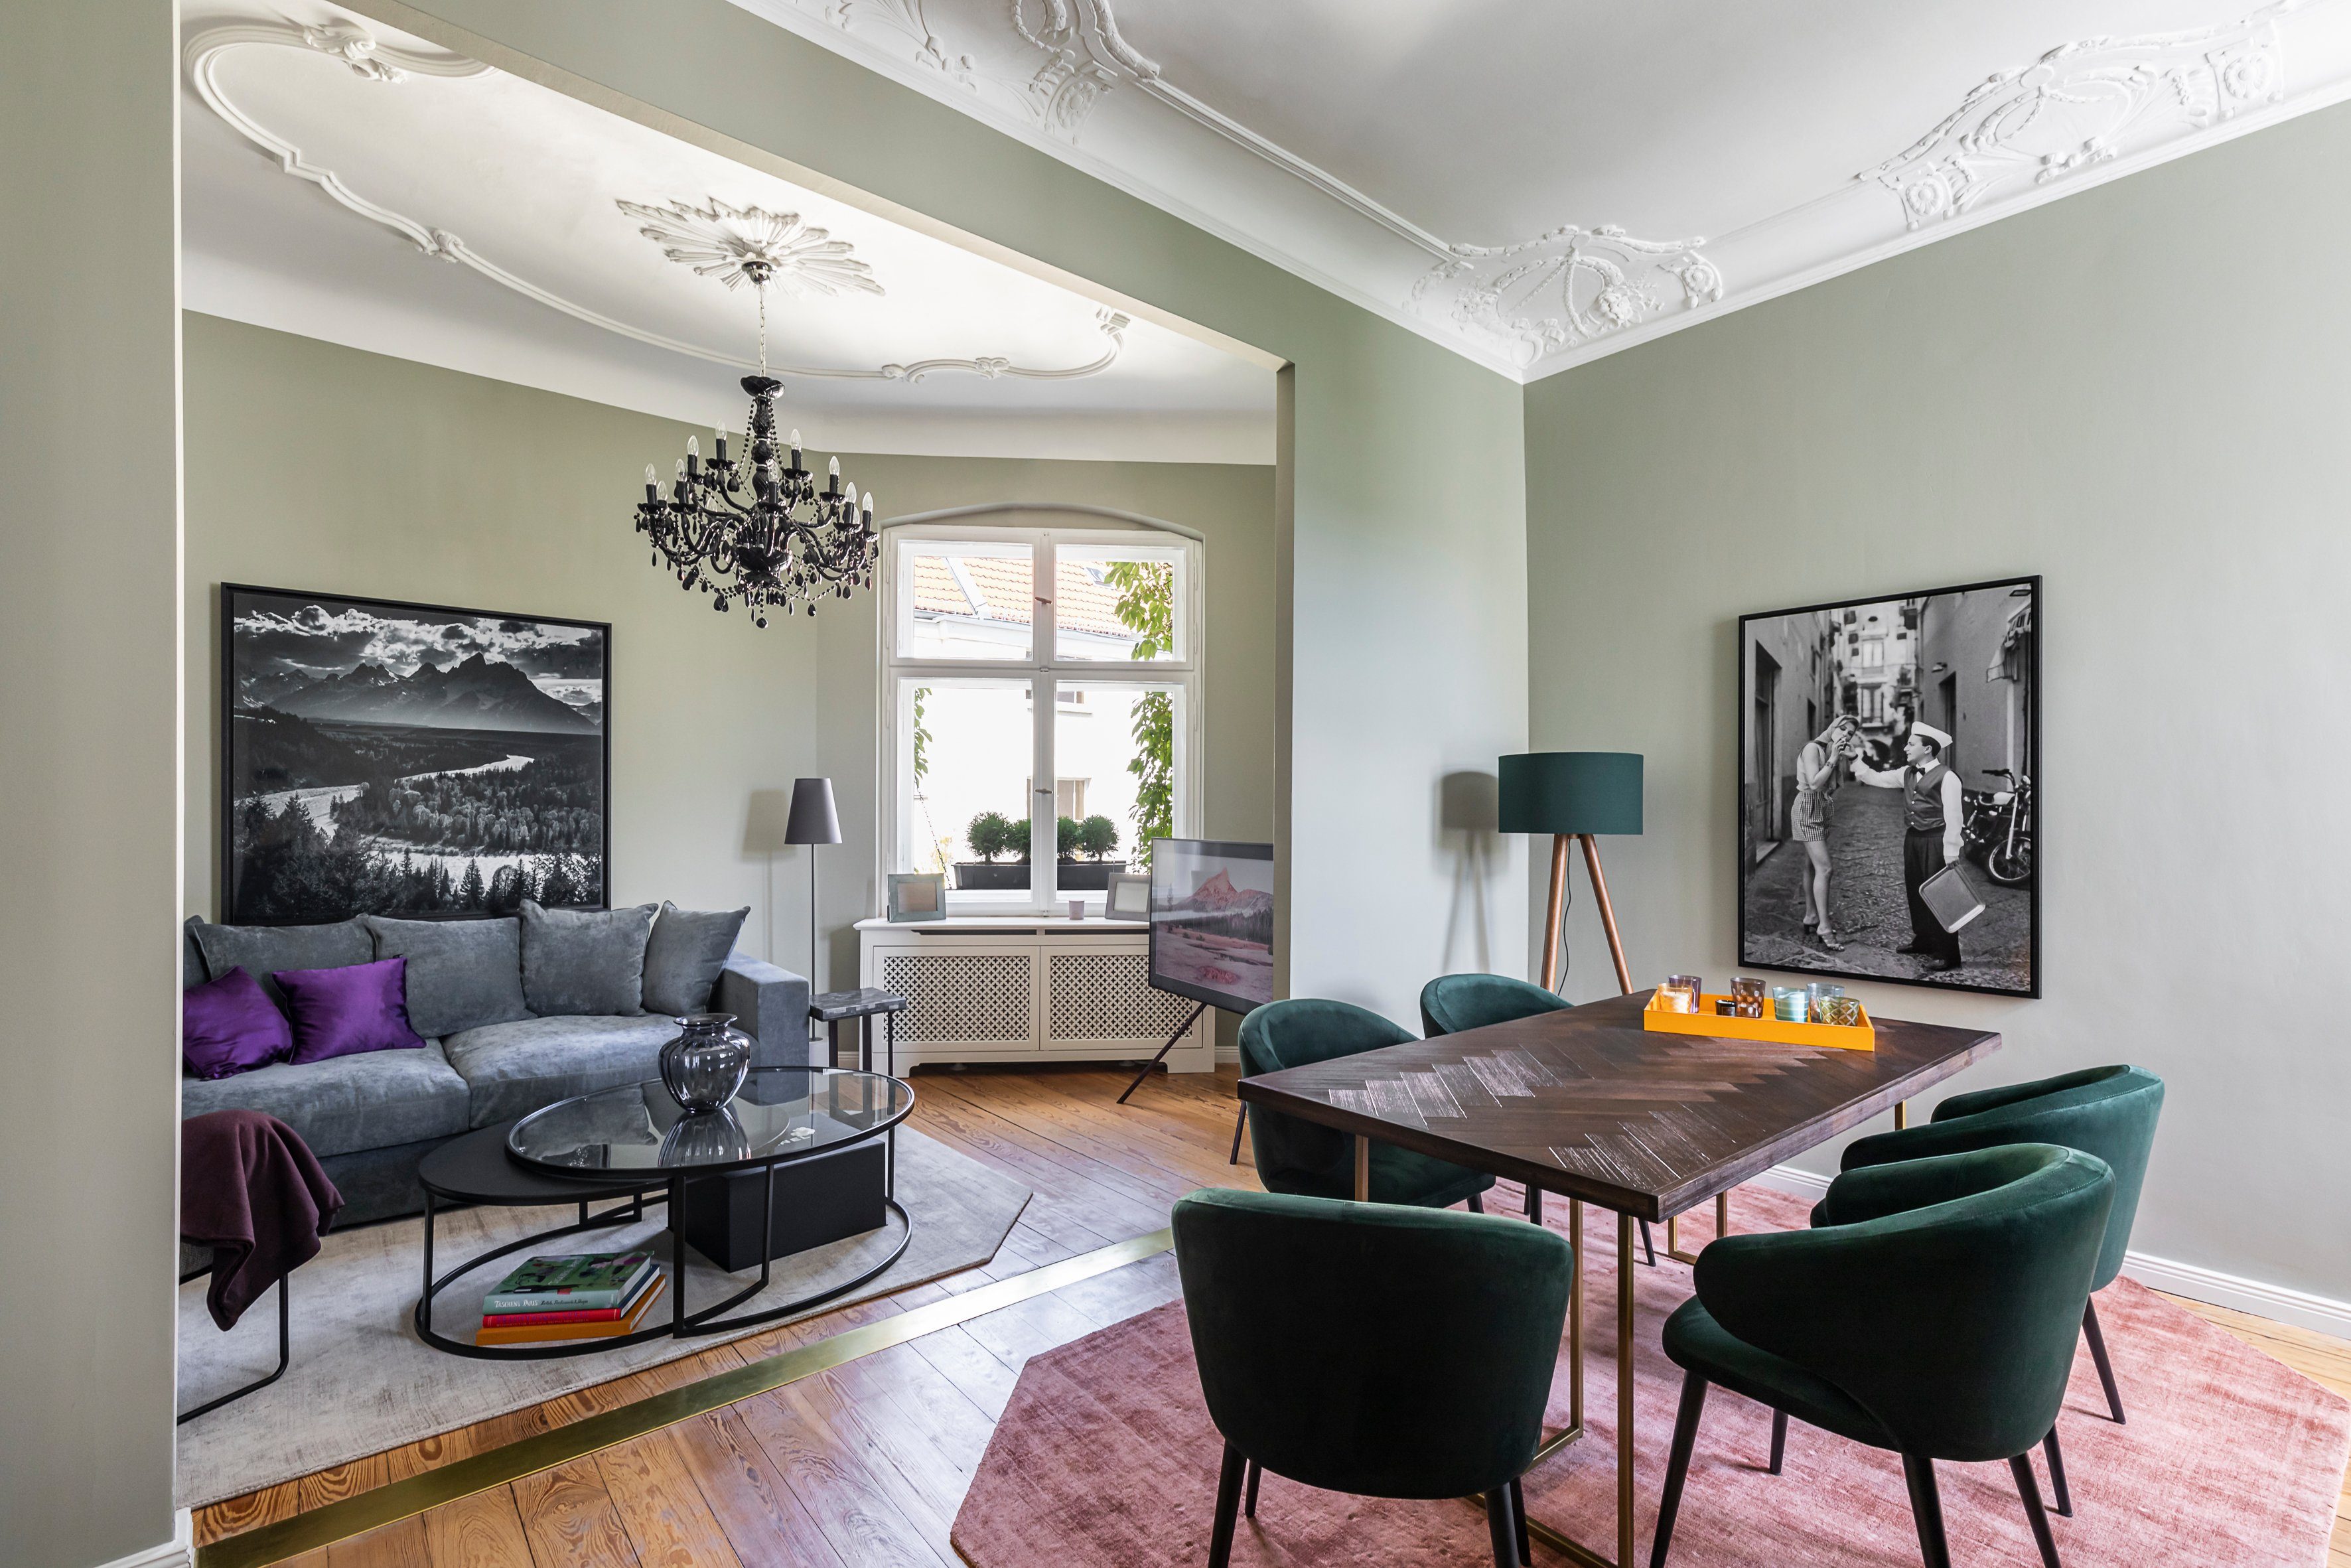 AMARIS Elements Sofa 3 Sitzer Qualität Couch od. Woll-Bezug, trifft 2.25m, 'Cooper' Größen, Samt Design Blau 4